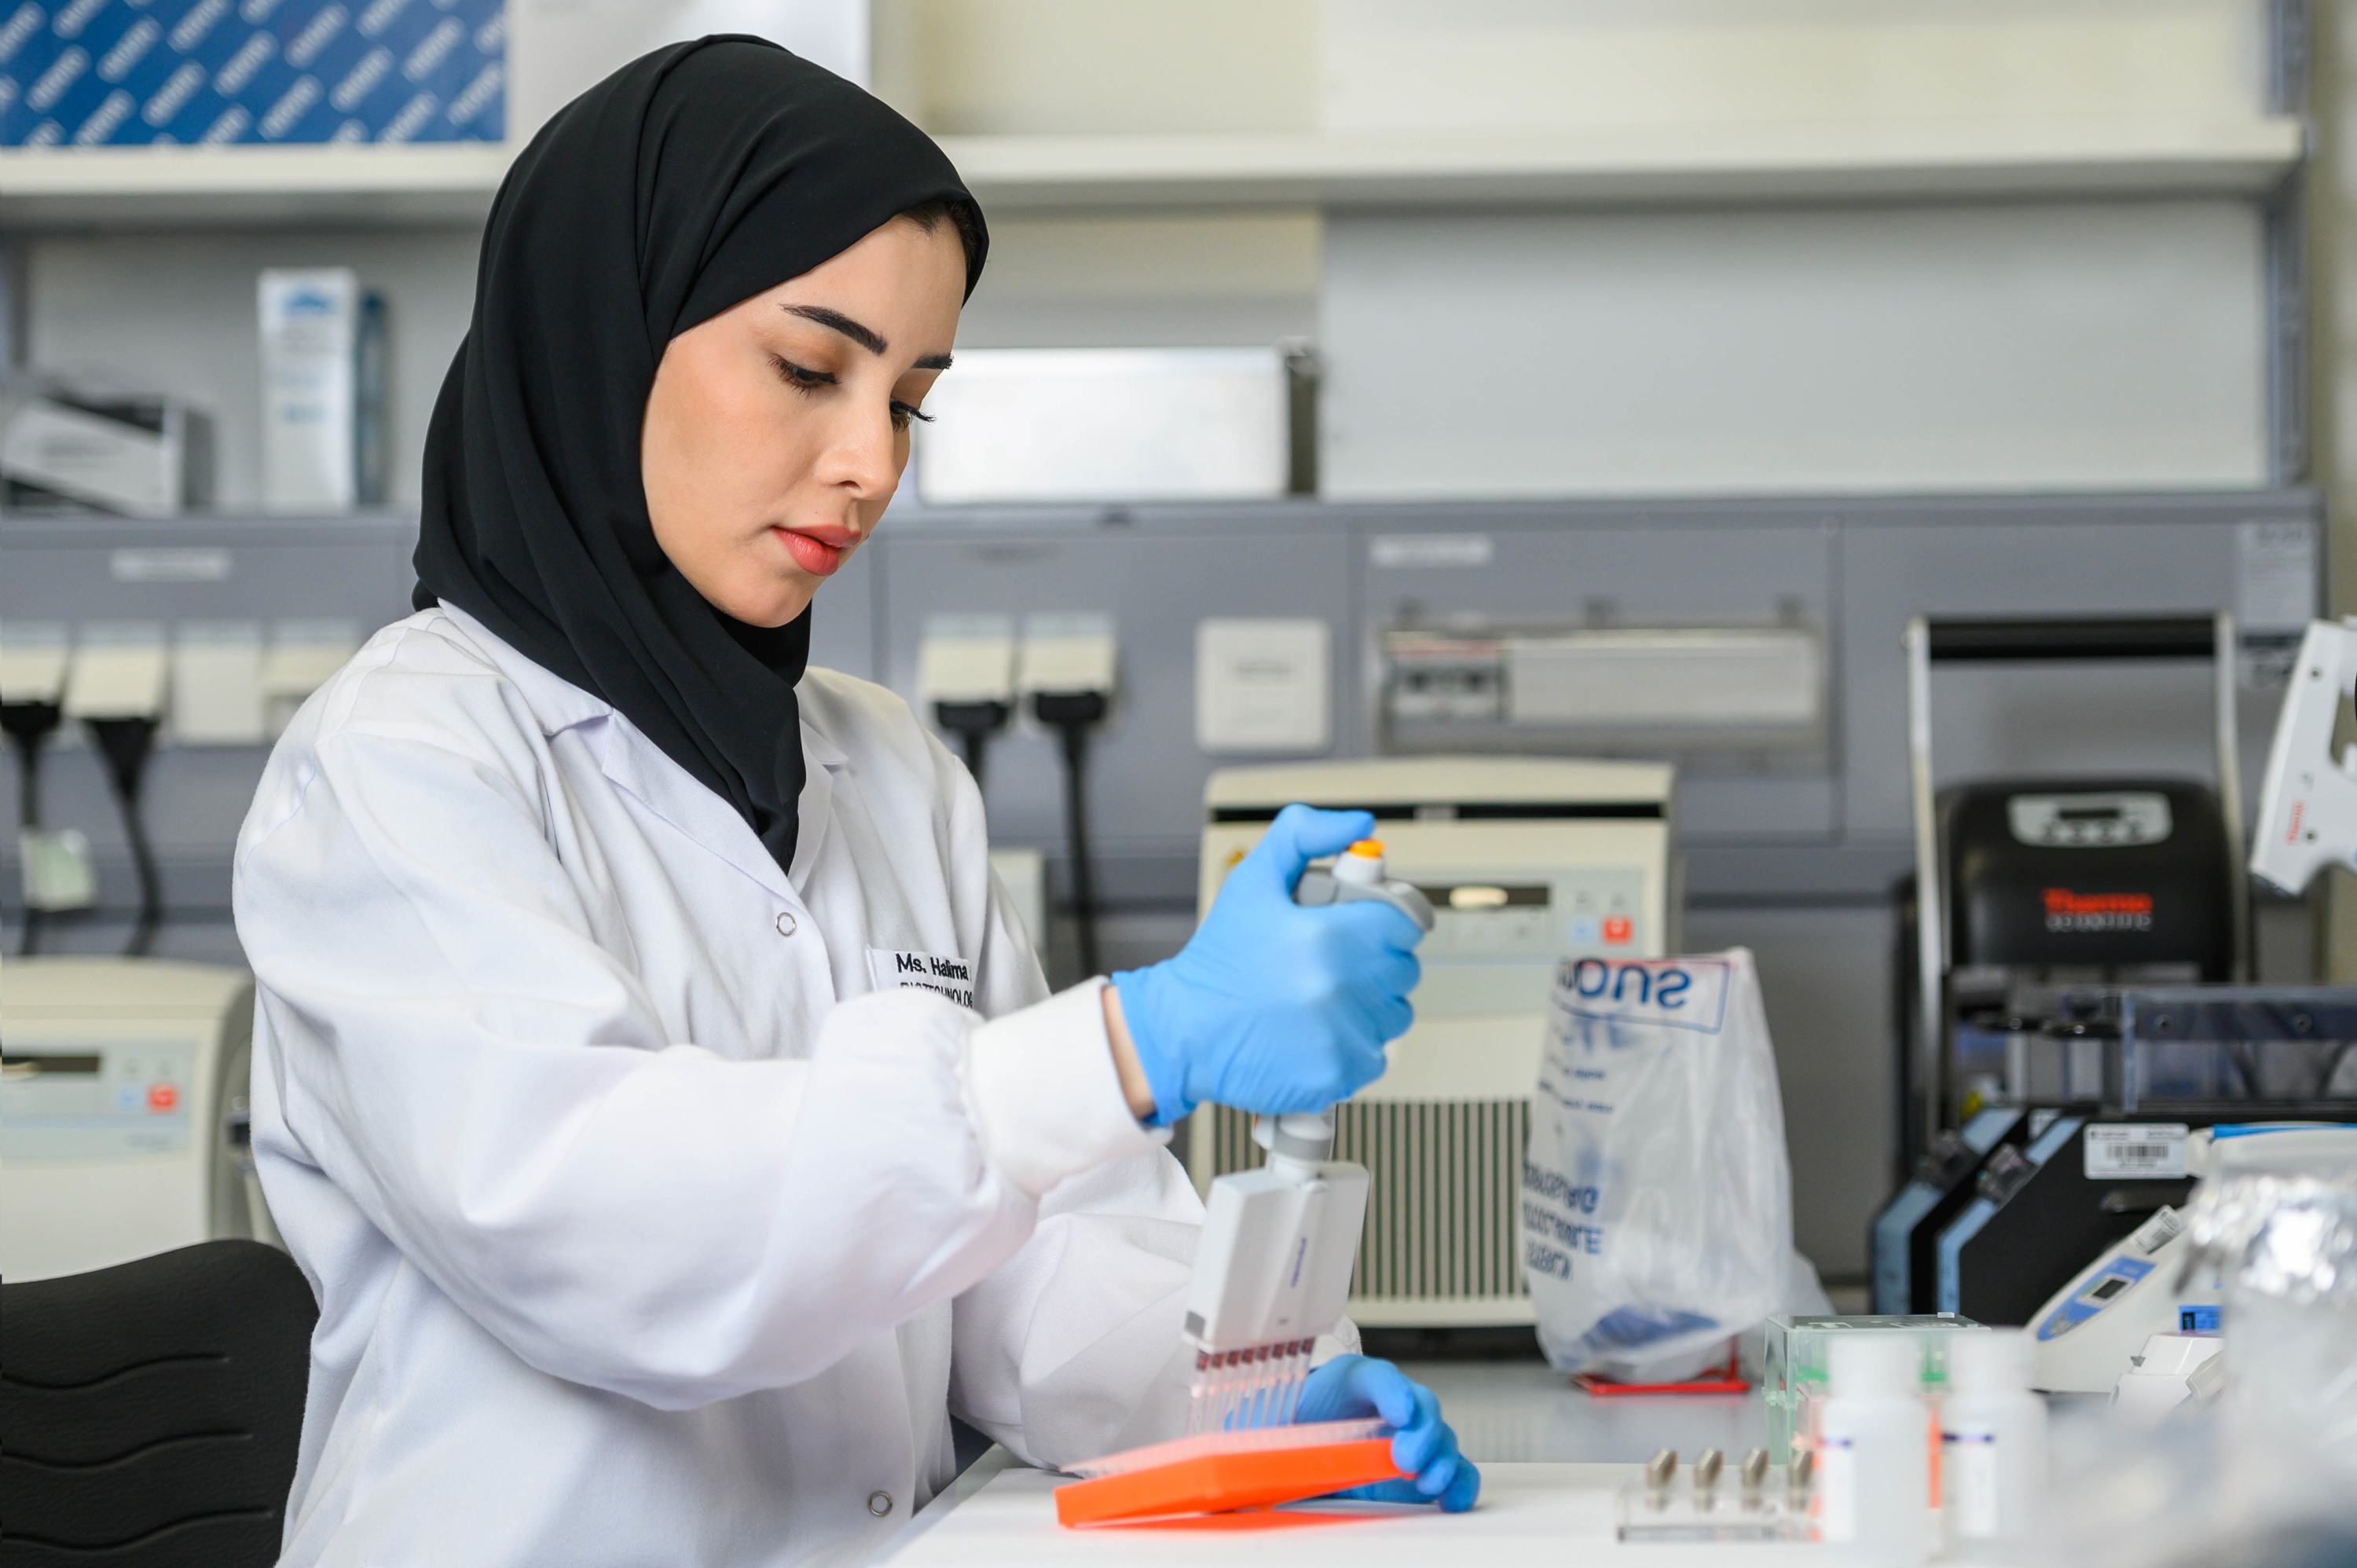 حليمة النقبي، إحدى الفائزات في جائزة لوريال-اليونسكو للمرأة في العلوم 2021،في المختبر.